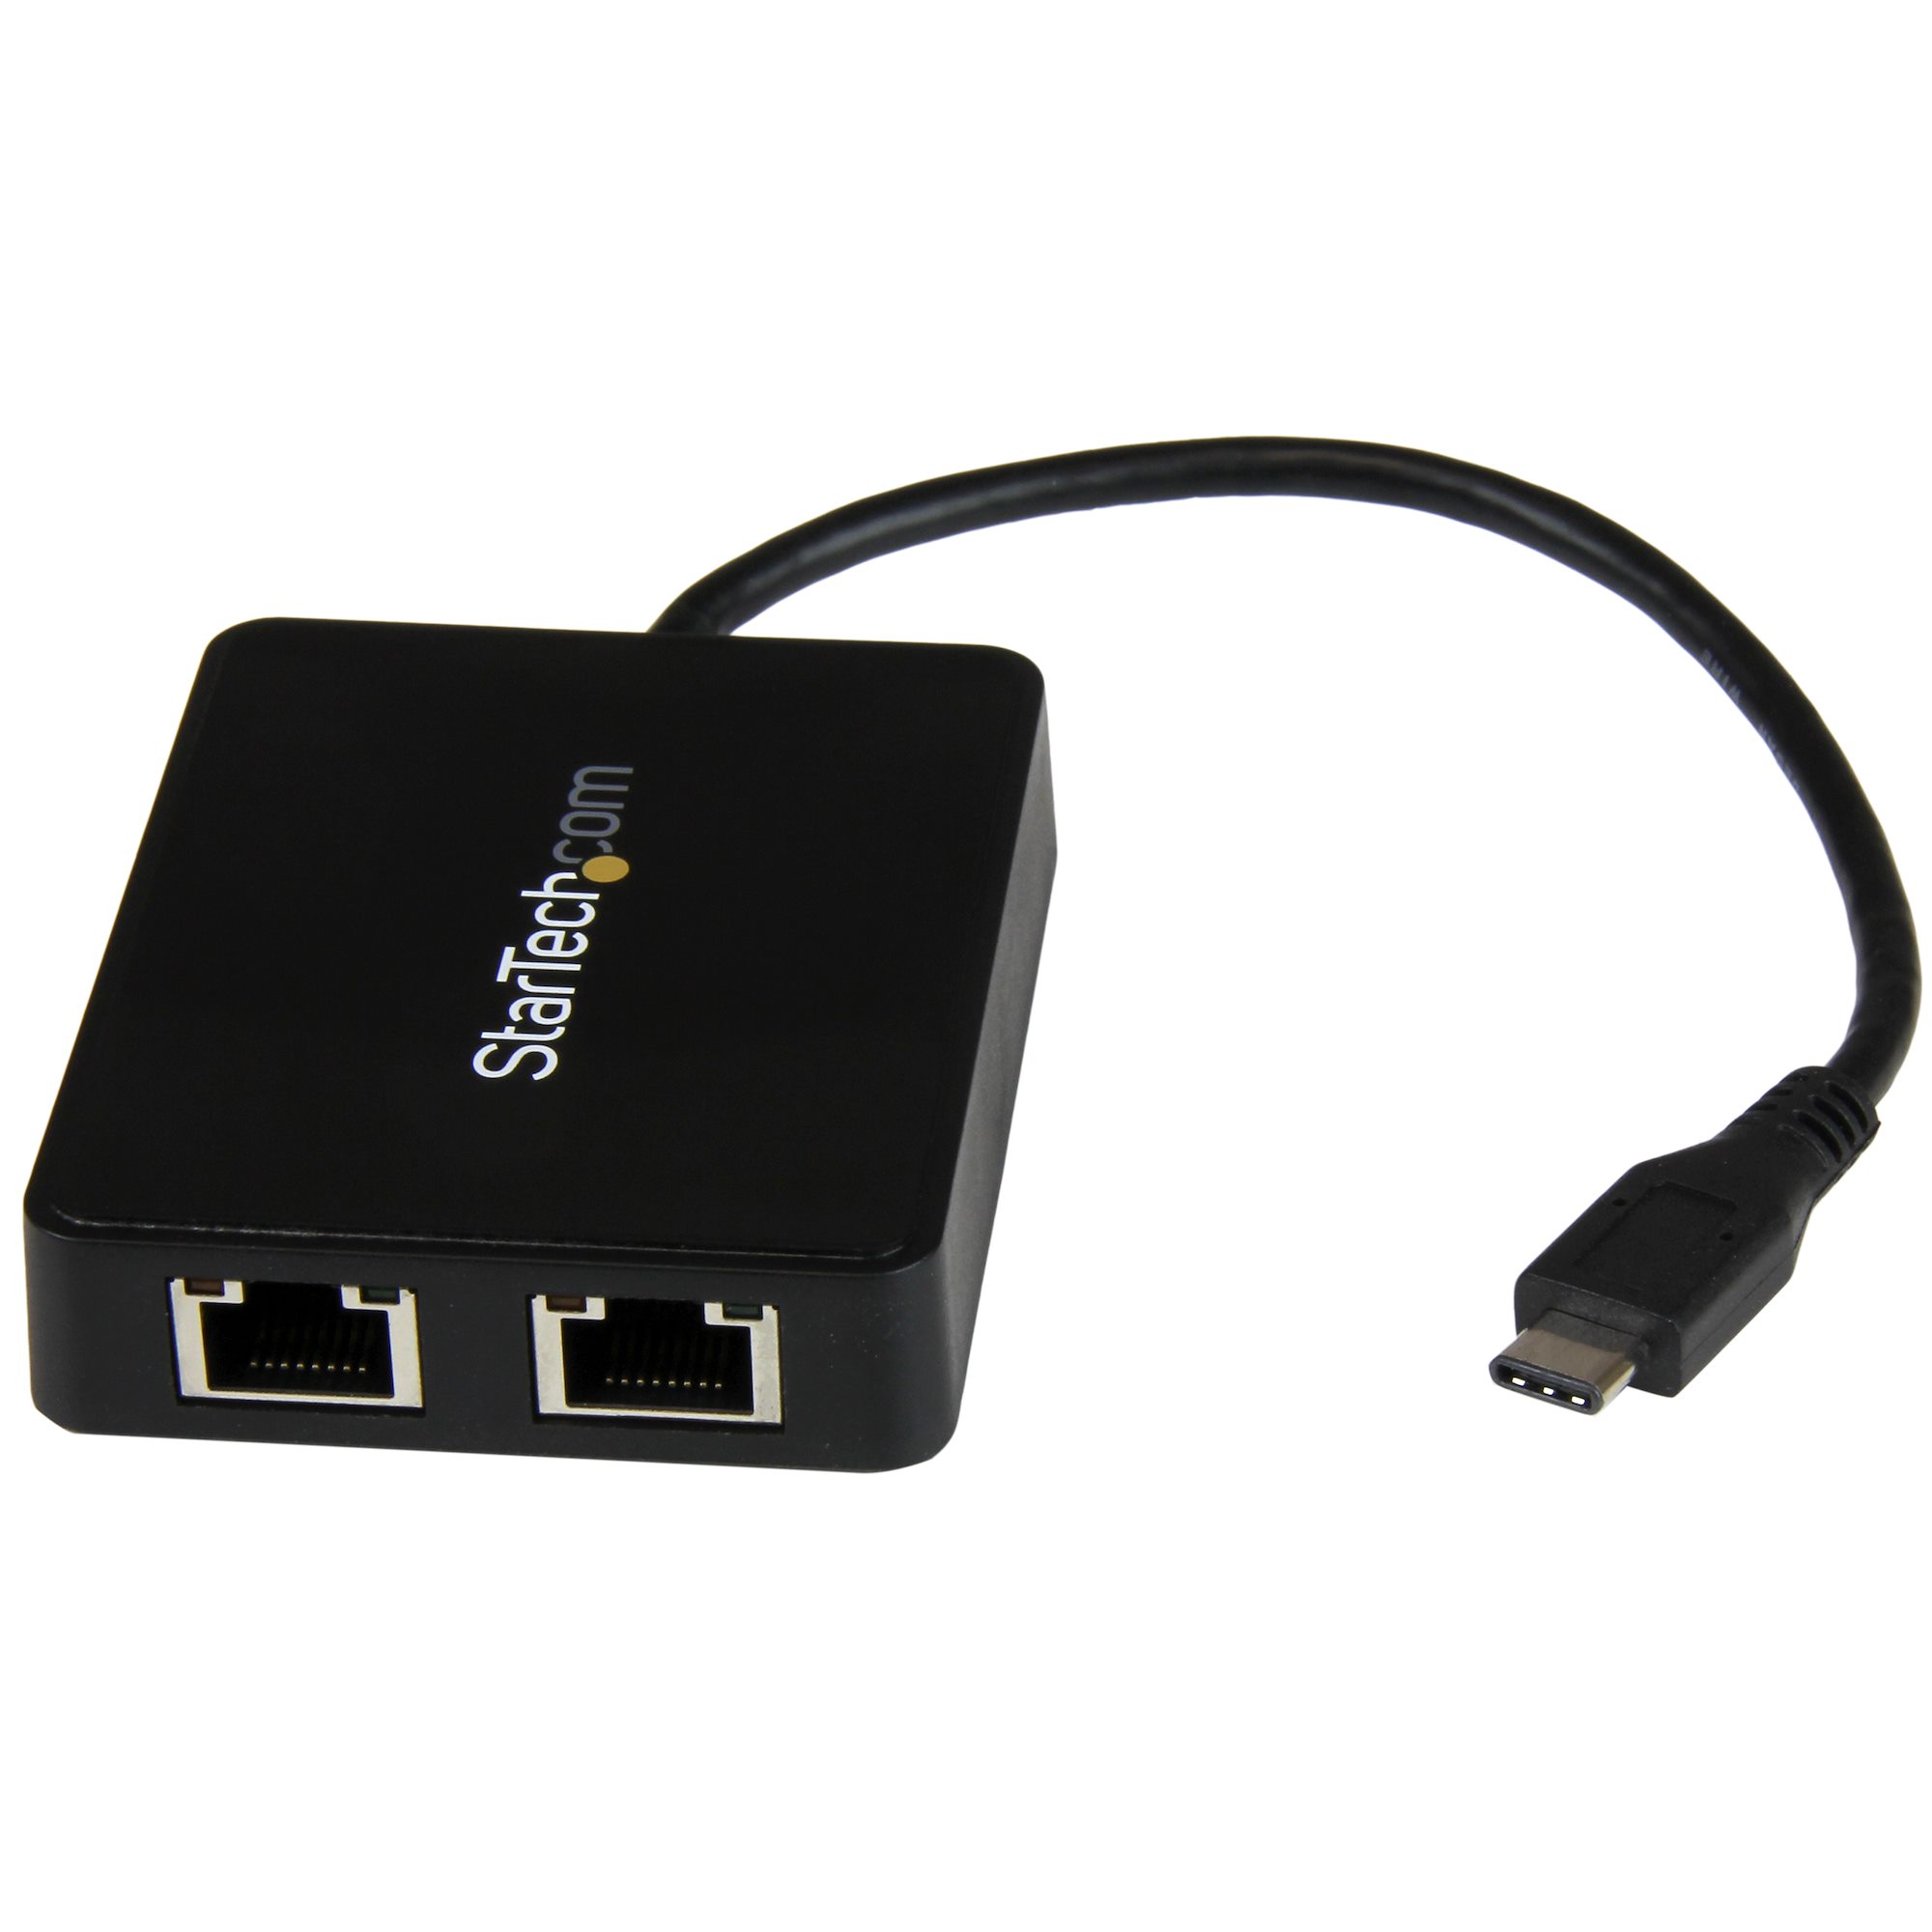 USB Type-C接続2ポートギガビット有線LAN変換アダプタ - USB 